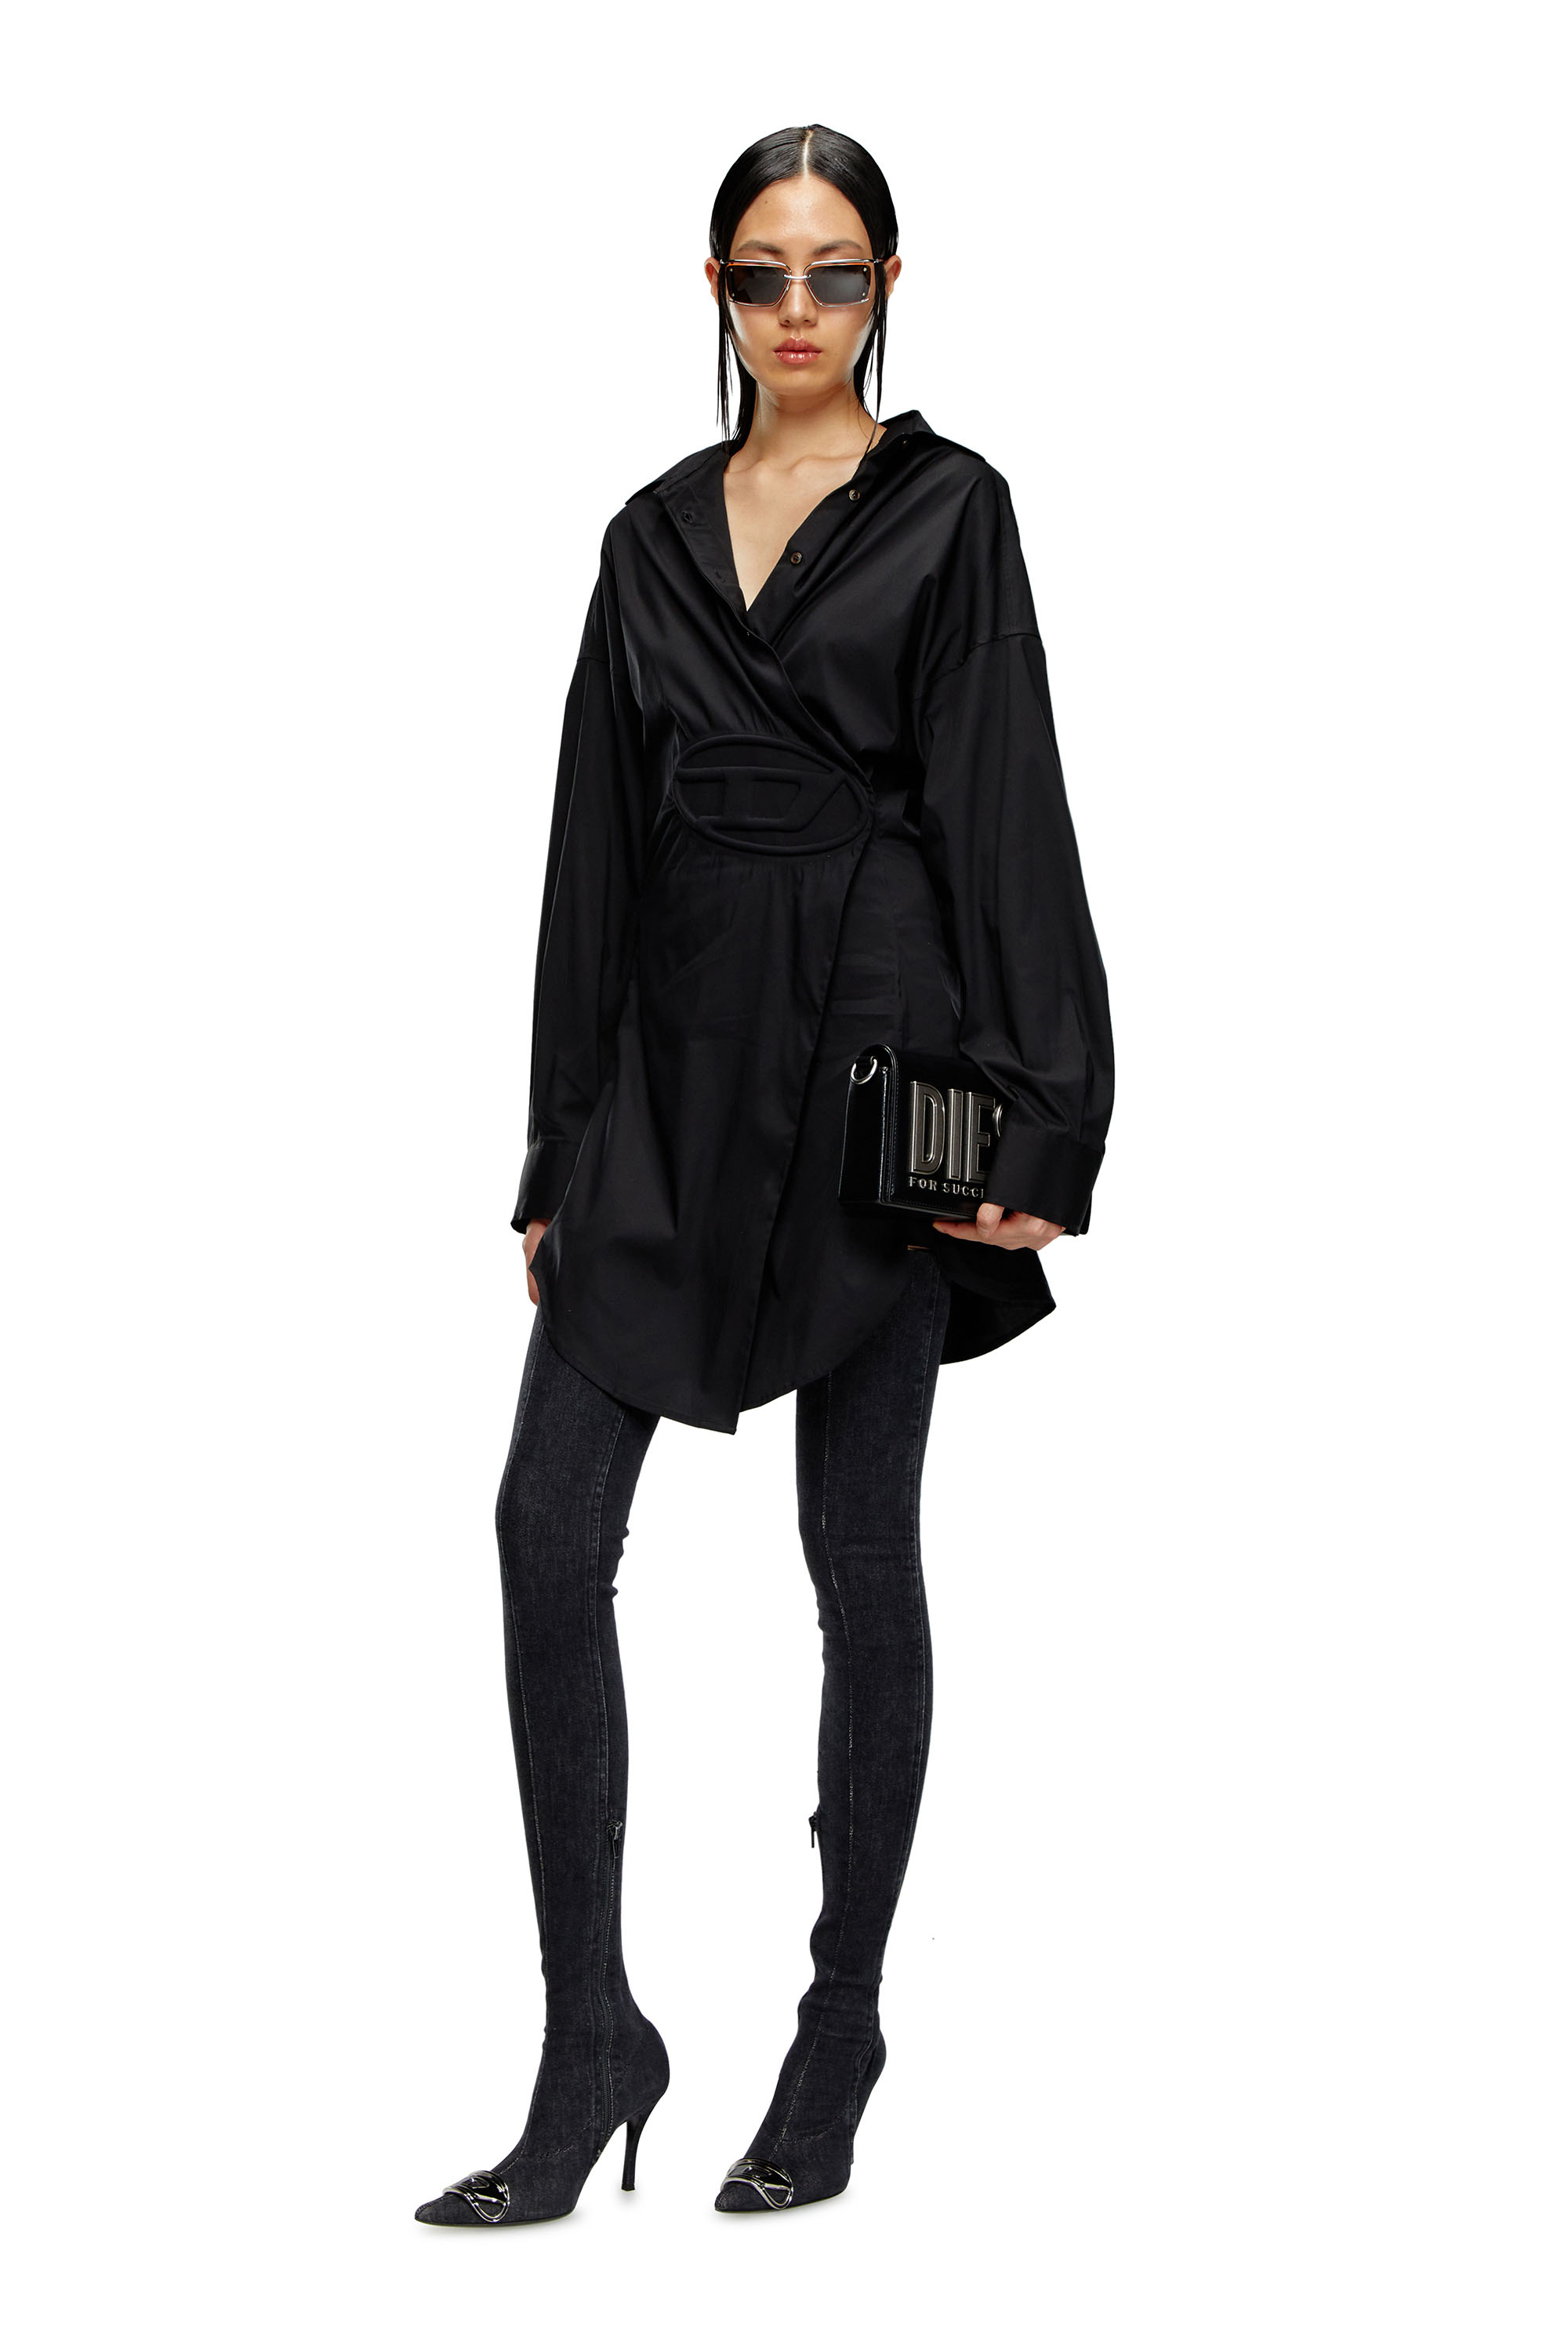 Diesel - D-SIZEN-N1, Woman Short shirt dress in stretch poplin in Black - Image 2